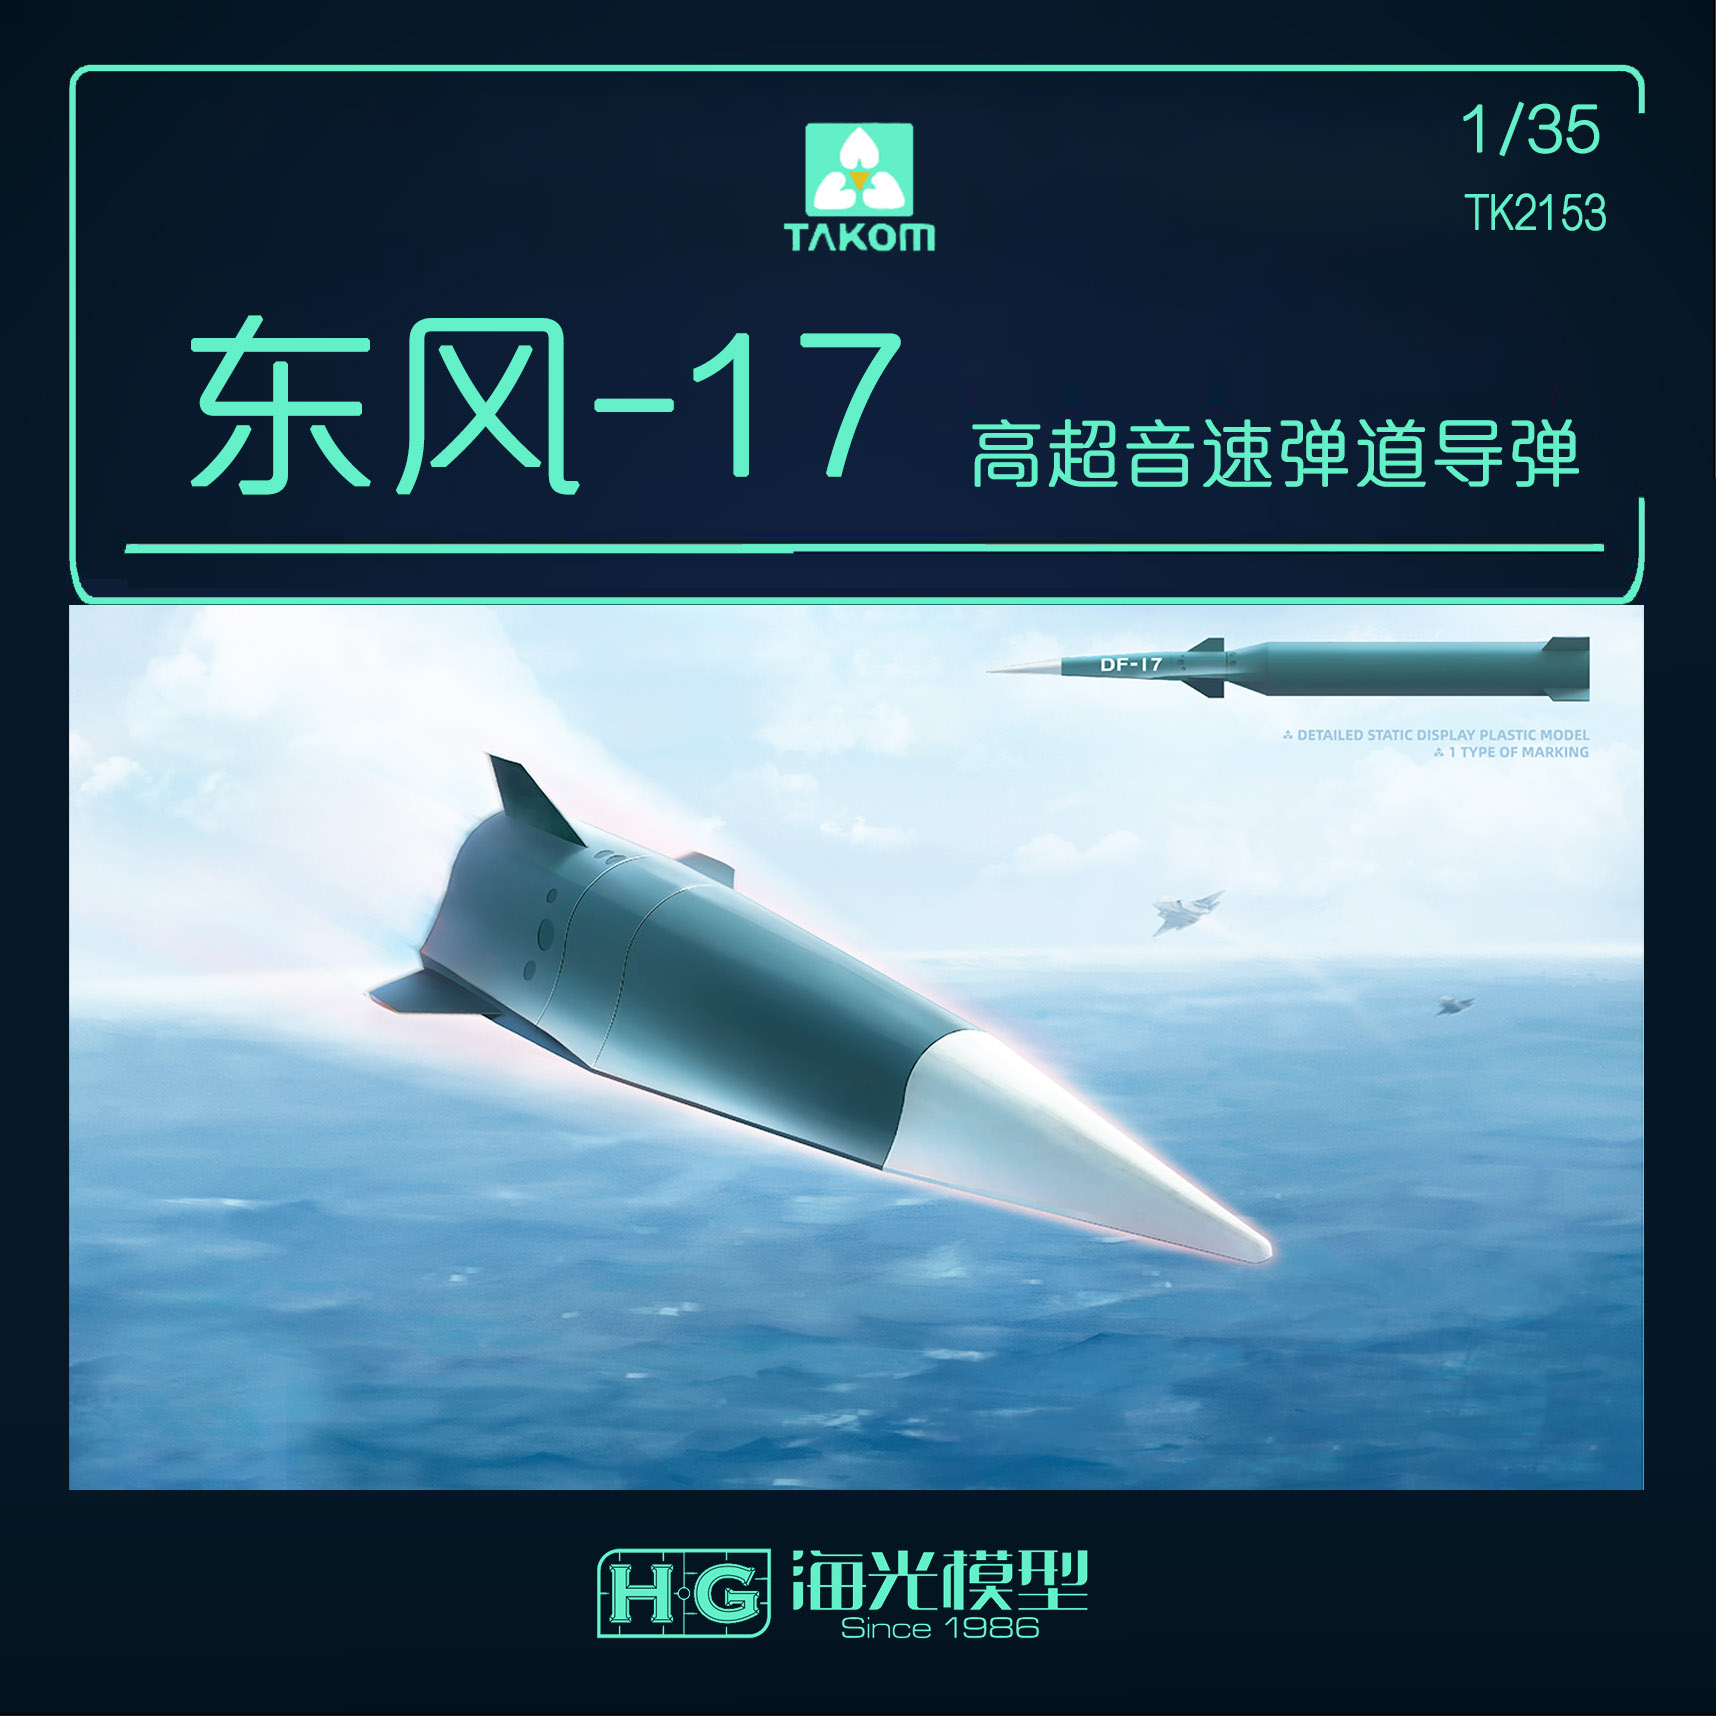 海光模型 三花 1/35 中国东风DF-17高超音速弹道导弹 2153